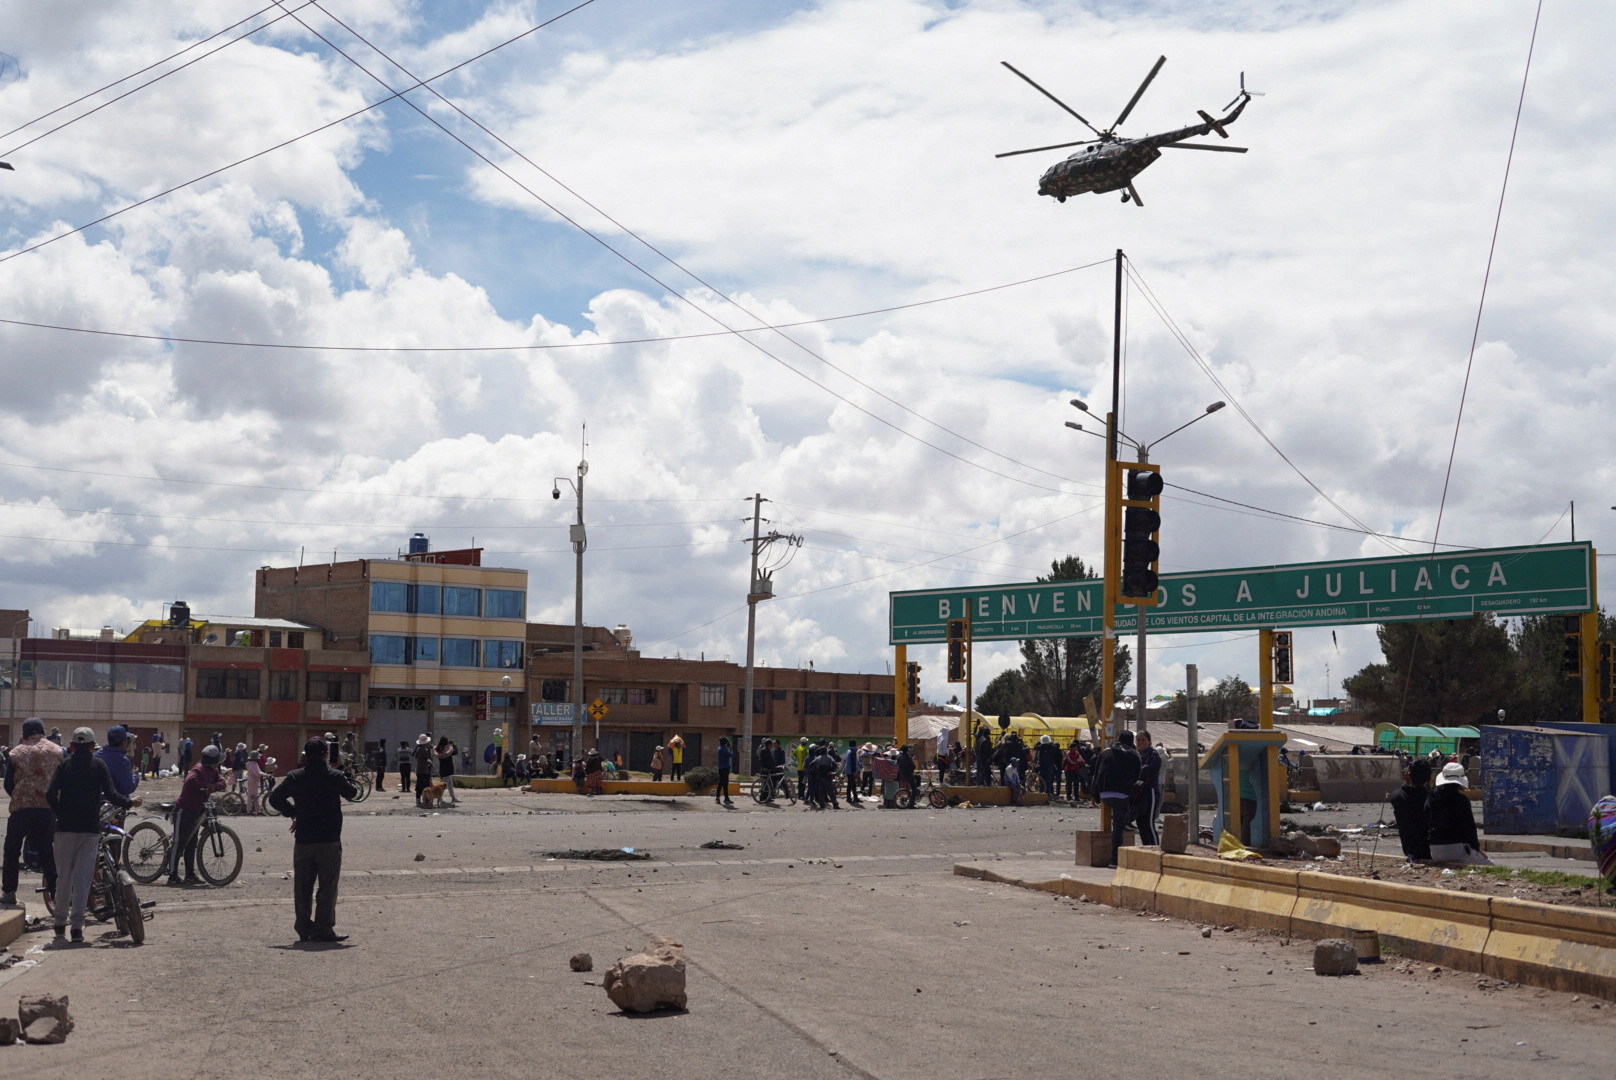 Juliaca, en la región Puno, se ha convertido en el epicentro de las manifestaciones contra el gobierno. (Reuters/Luis Javier)